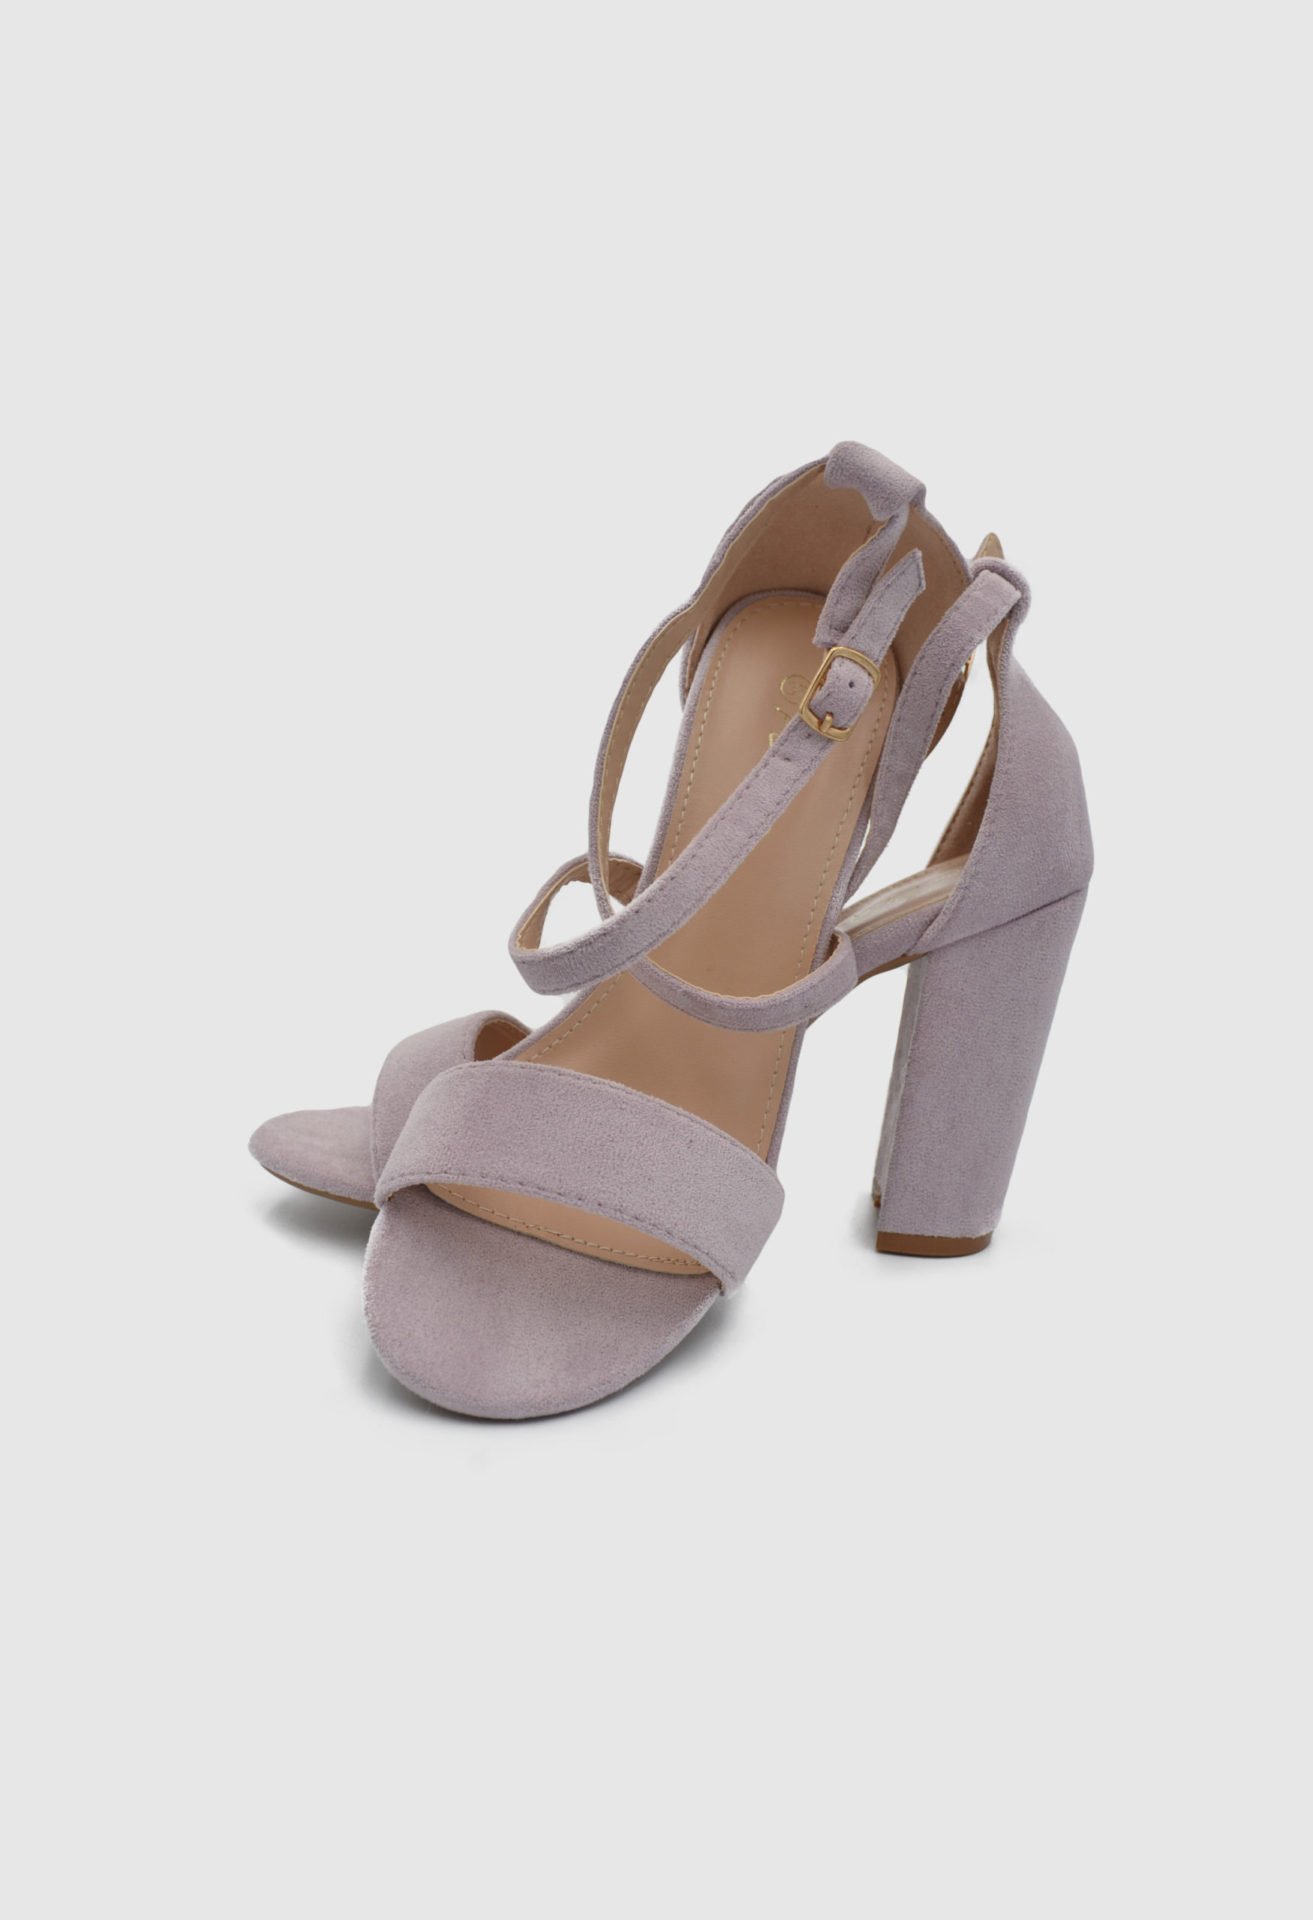 Chunky High Heel Ankle Strap Sandals in Purple Color / 497947 ΓΥΝΑΙΚΕΙΑ ΠΑΠΟΥΤΣΙΑ joya.gr